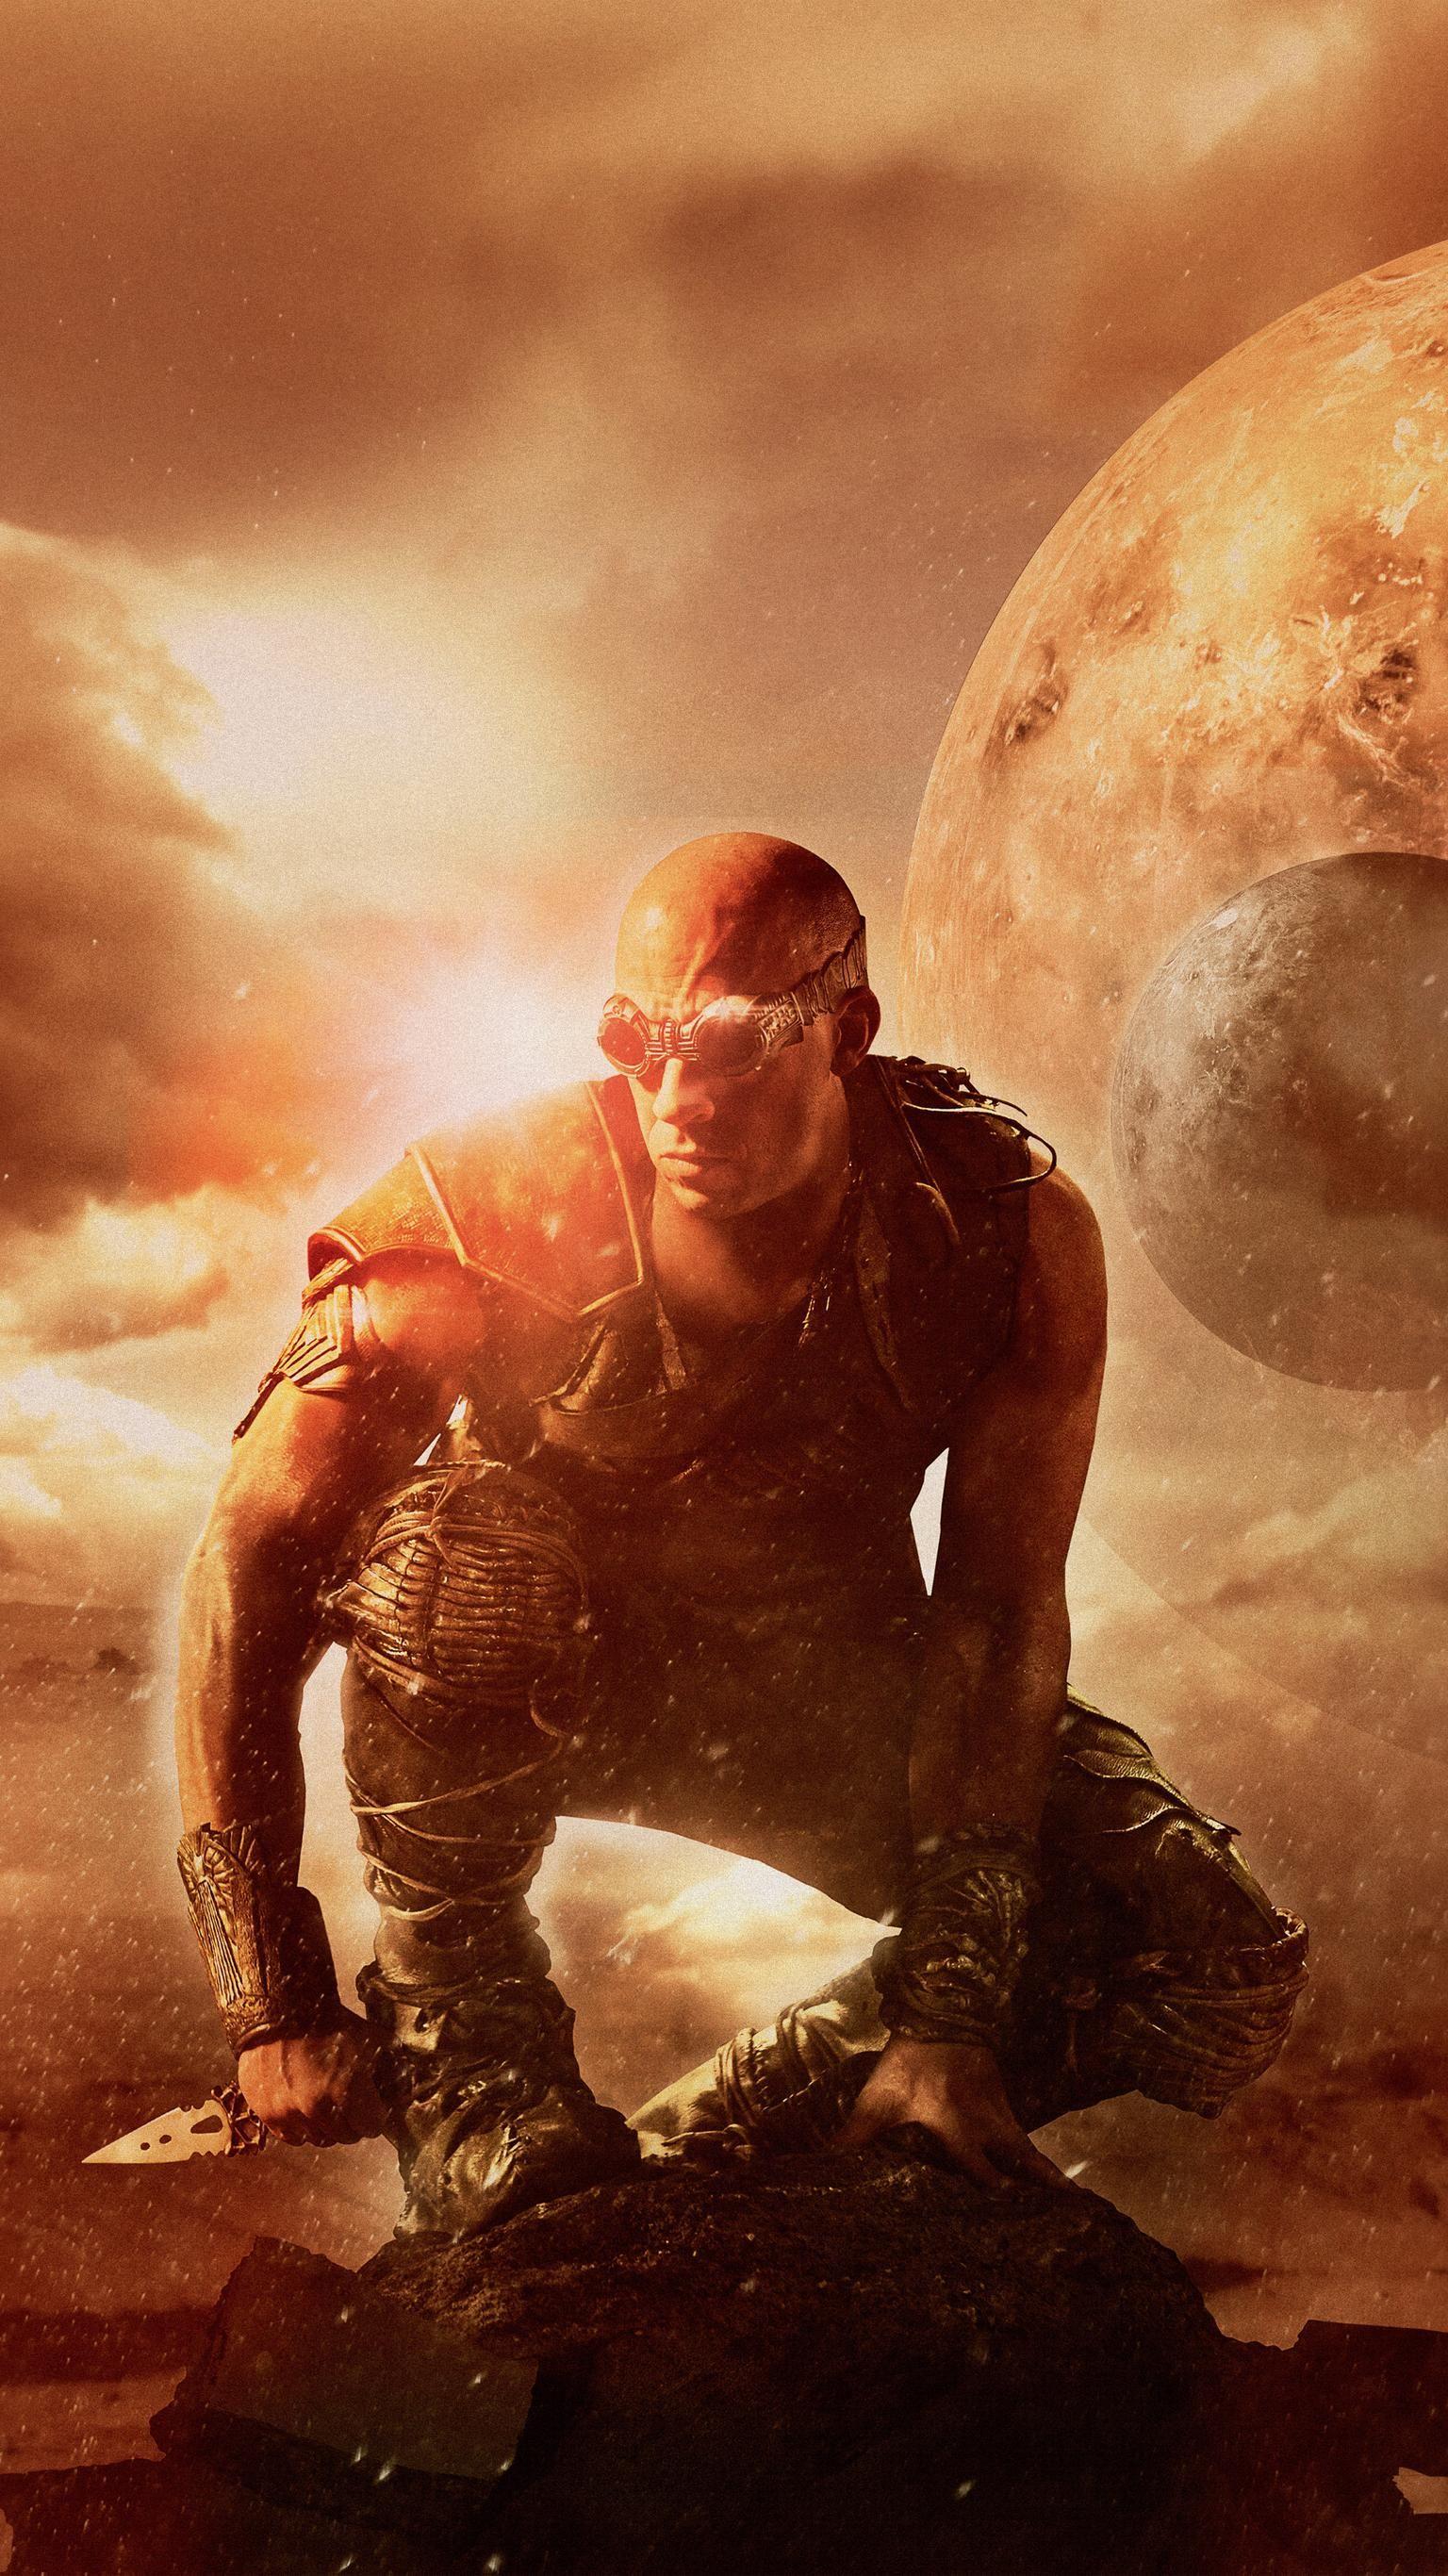 Riddick (2013) Phone Wallpaper. Moviemania. Vin diesel, Diesel, Action movie poster